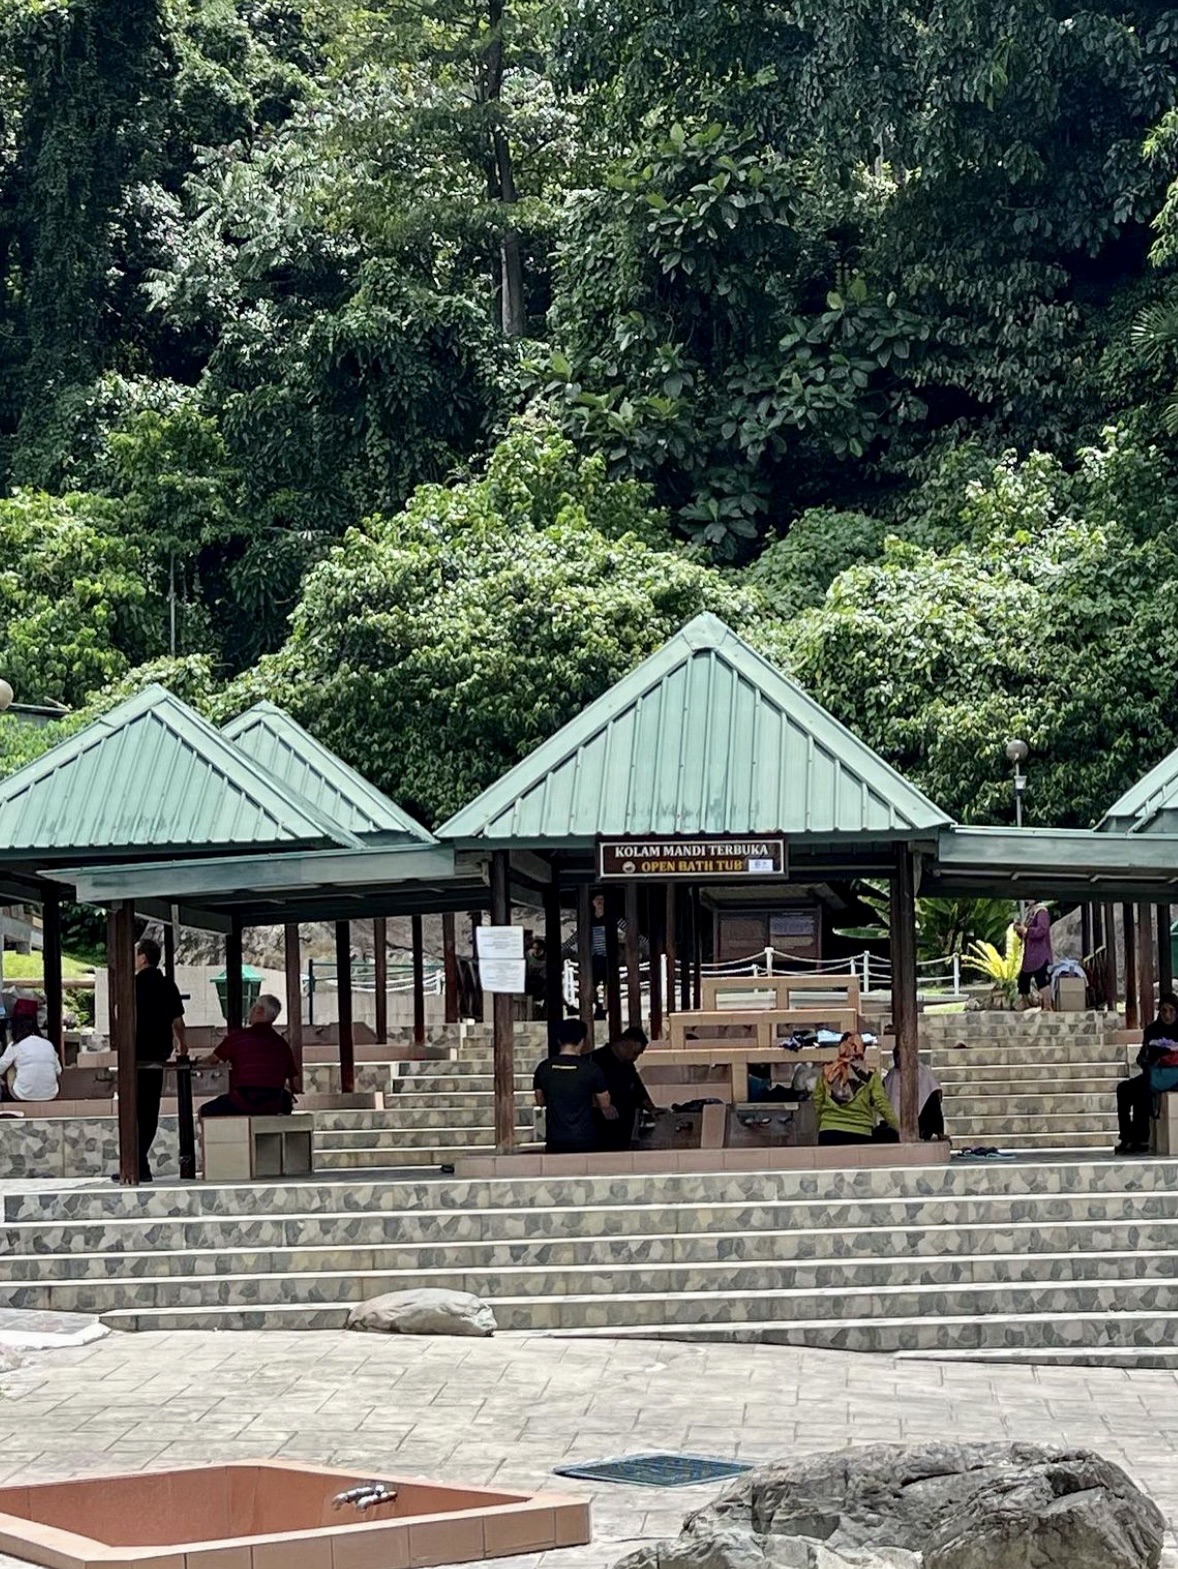 波林温泉 - 婆罗洲, 马来西亚